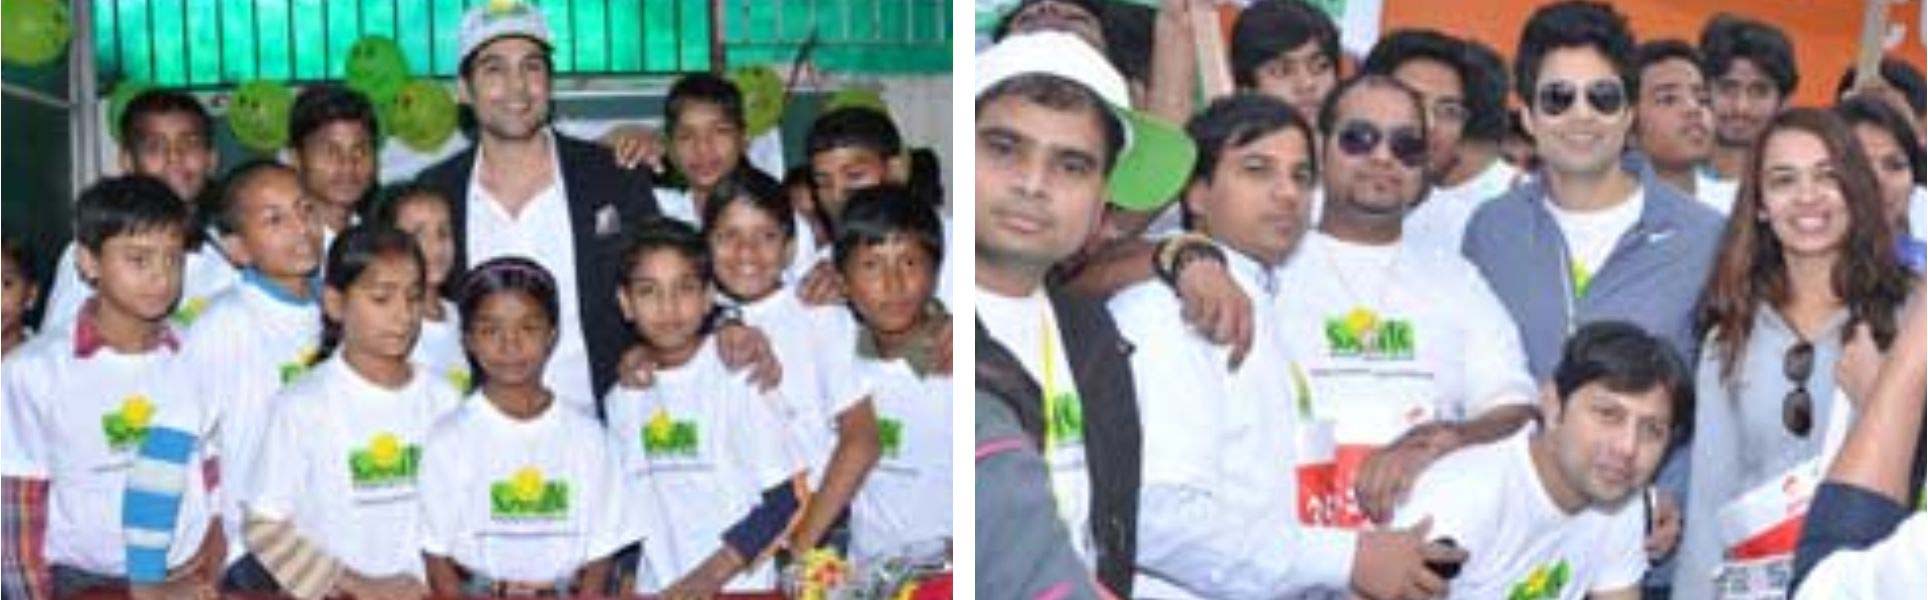 Rajeev Khandelwal became Smile's ambassador at the Airtel Delhi Half Marathon